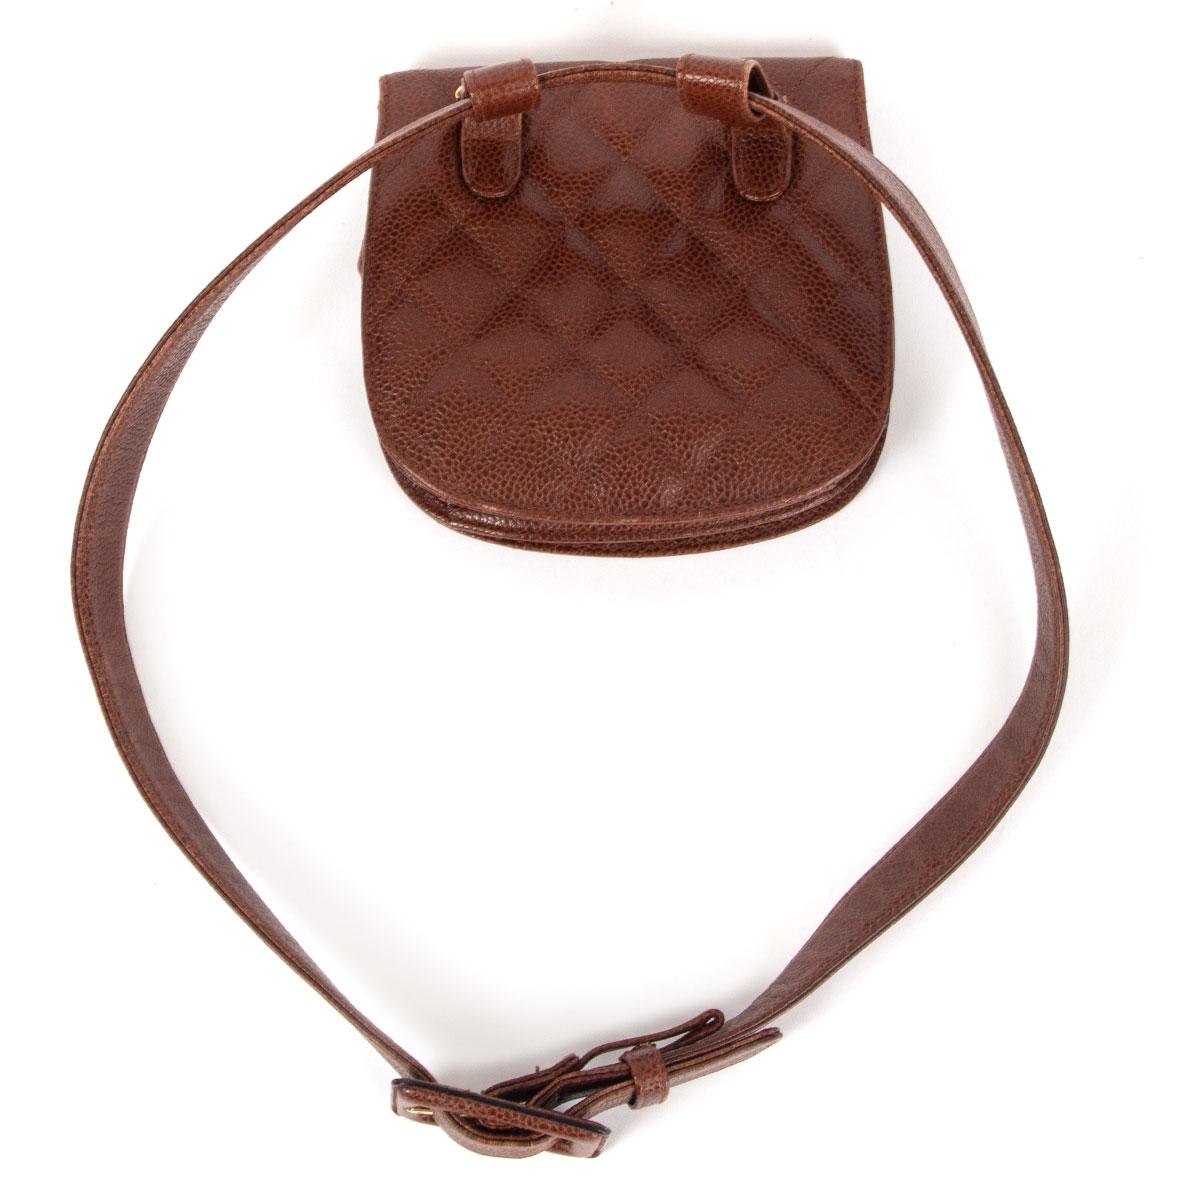 CHANEL chestnut brown quilted Caviar leather VINTAGE 1990 Belt Bag 1